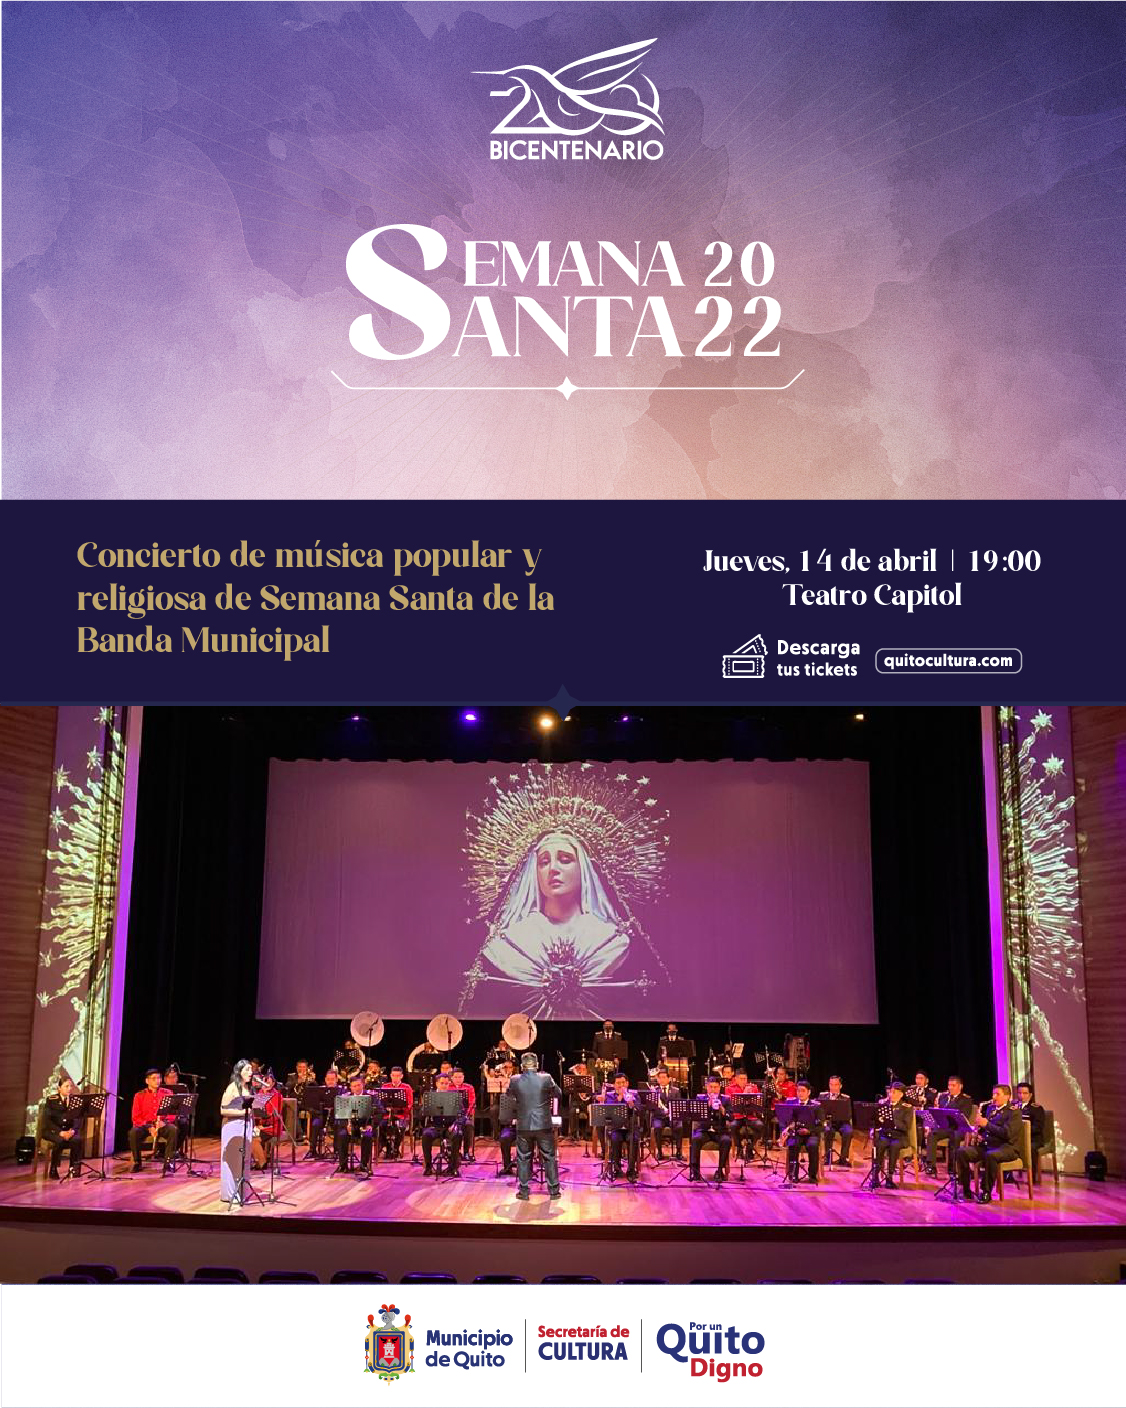 Concierto de música popular y religiosa de Semana Santa de la Banda Municipal